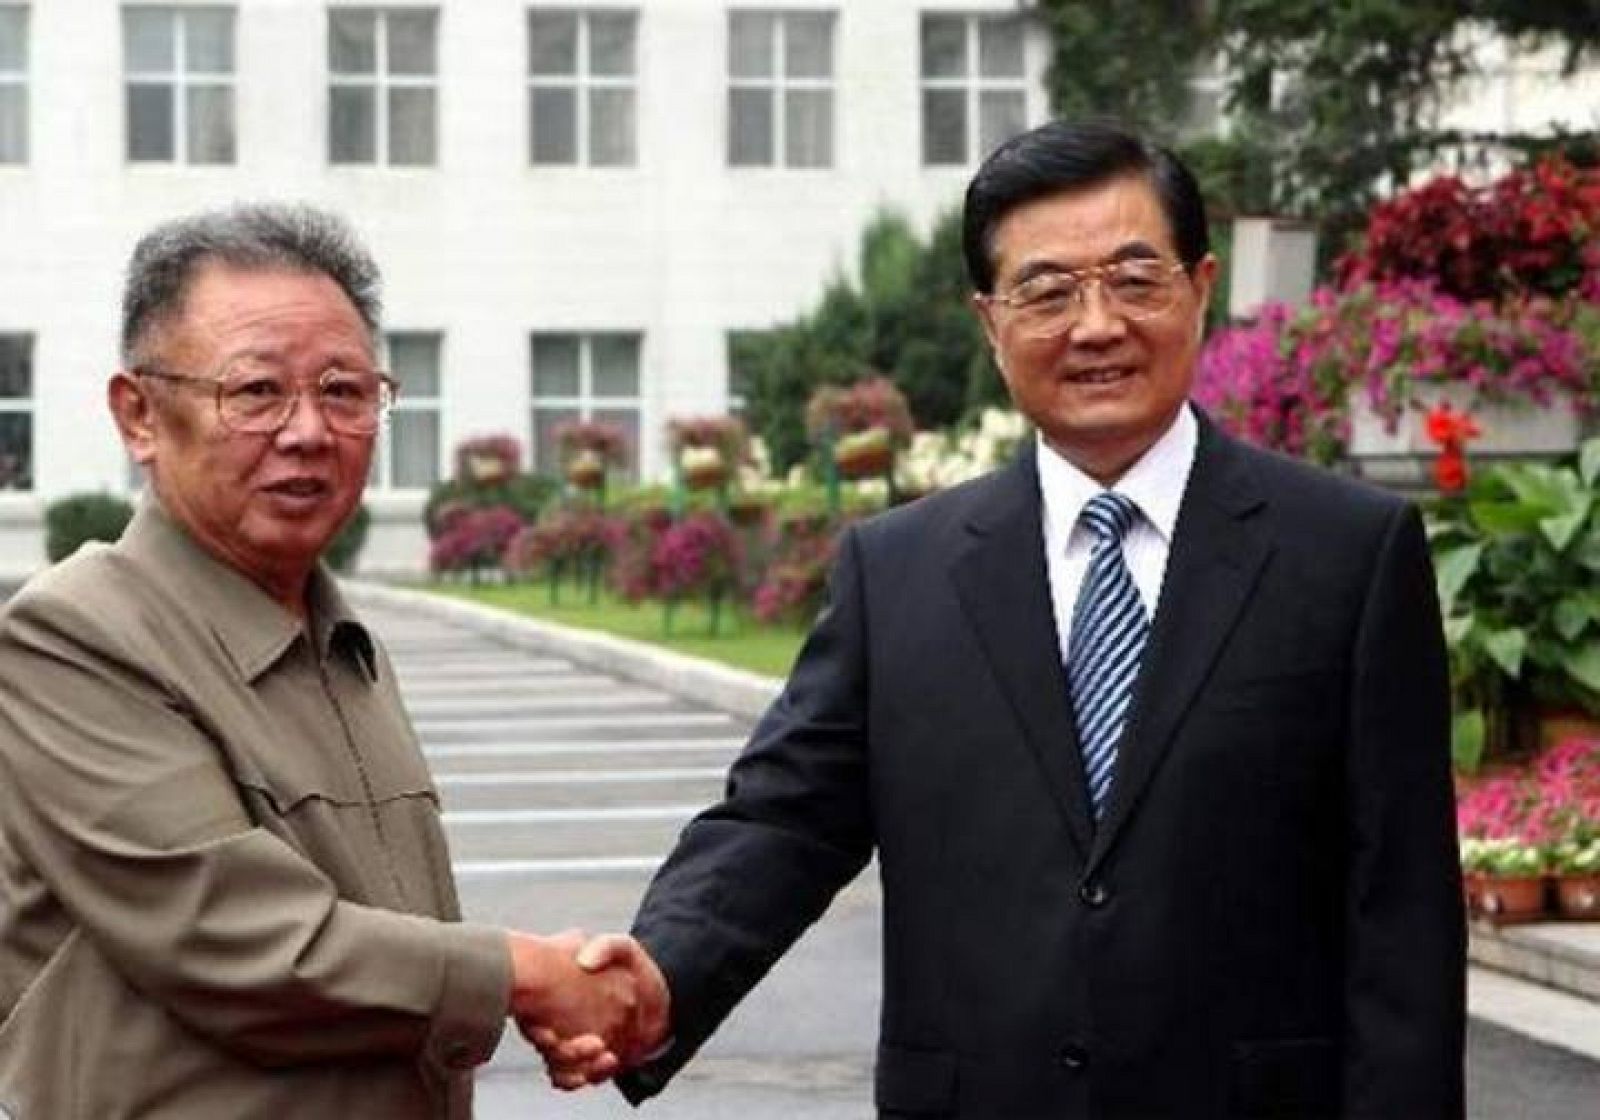 Imagen del encuentro entre Kim y Hu difundida por los medios oficiales chinos.